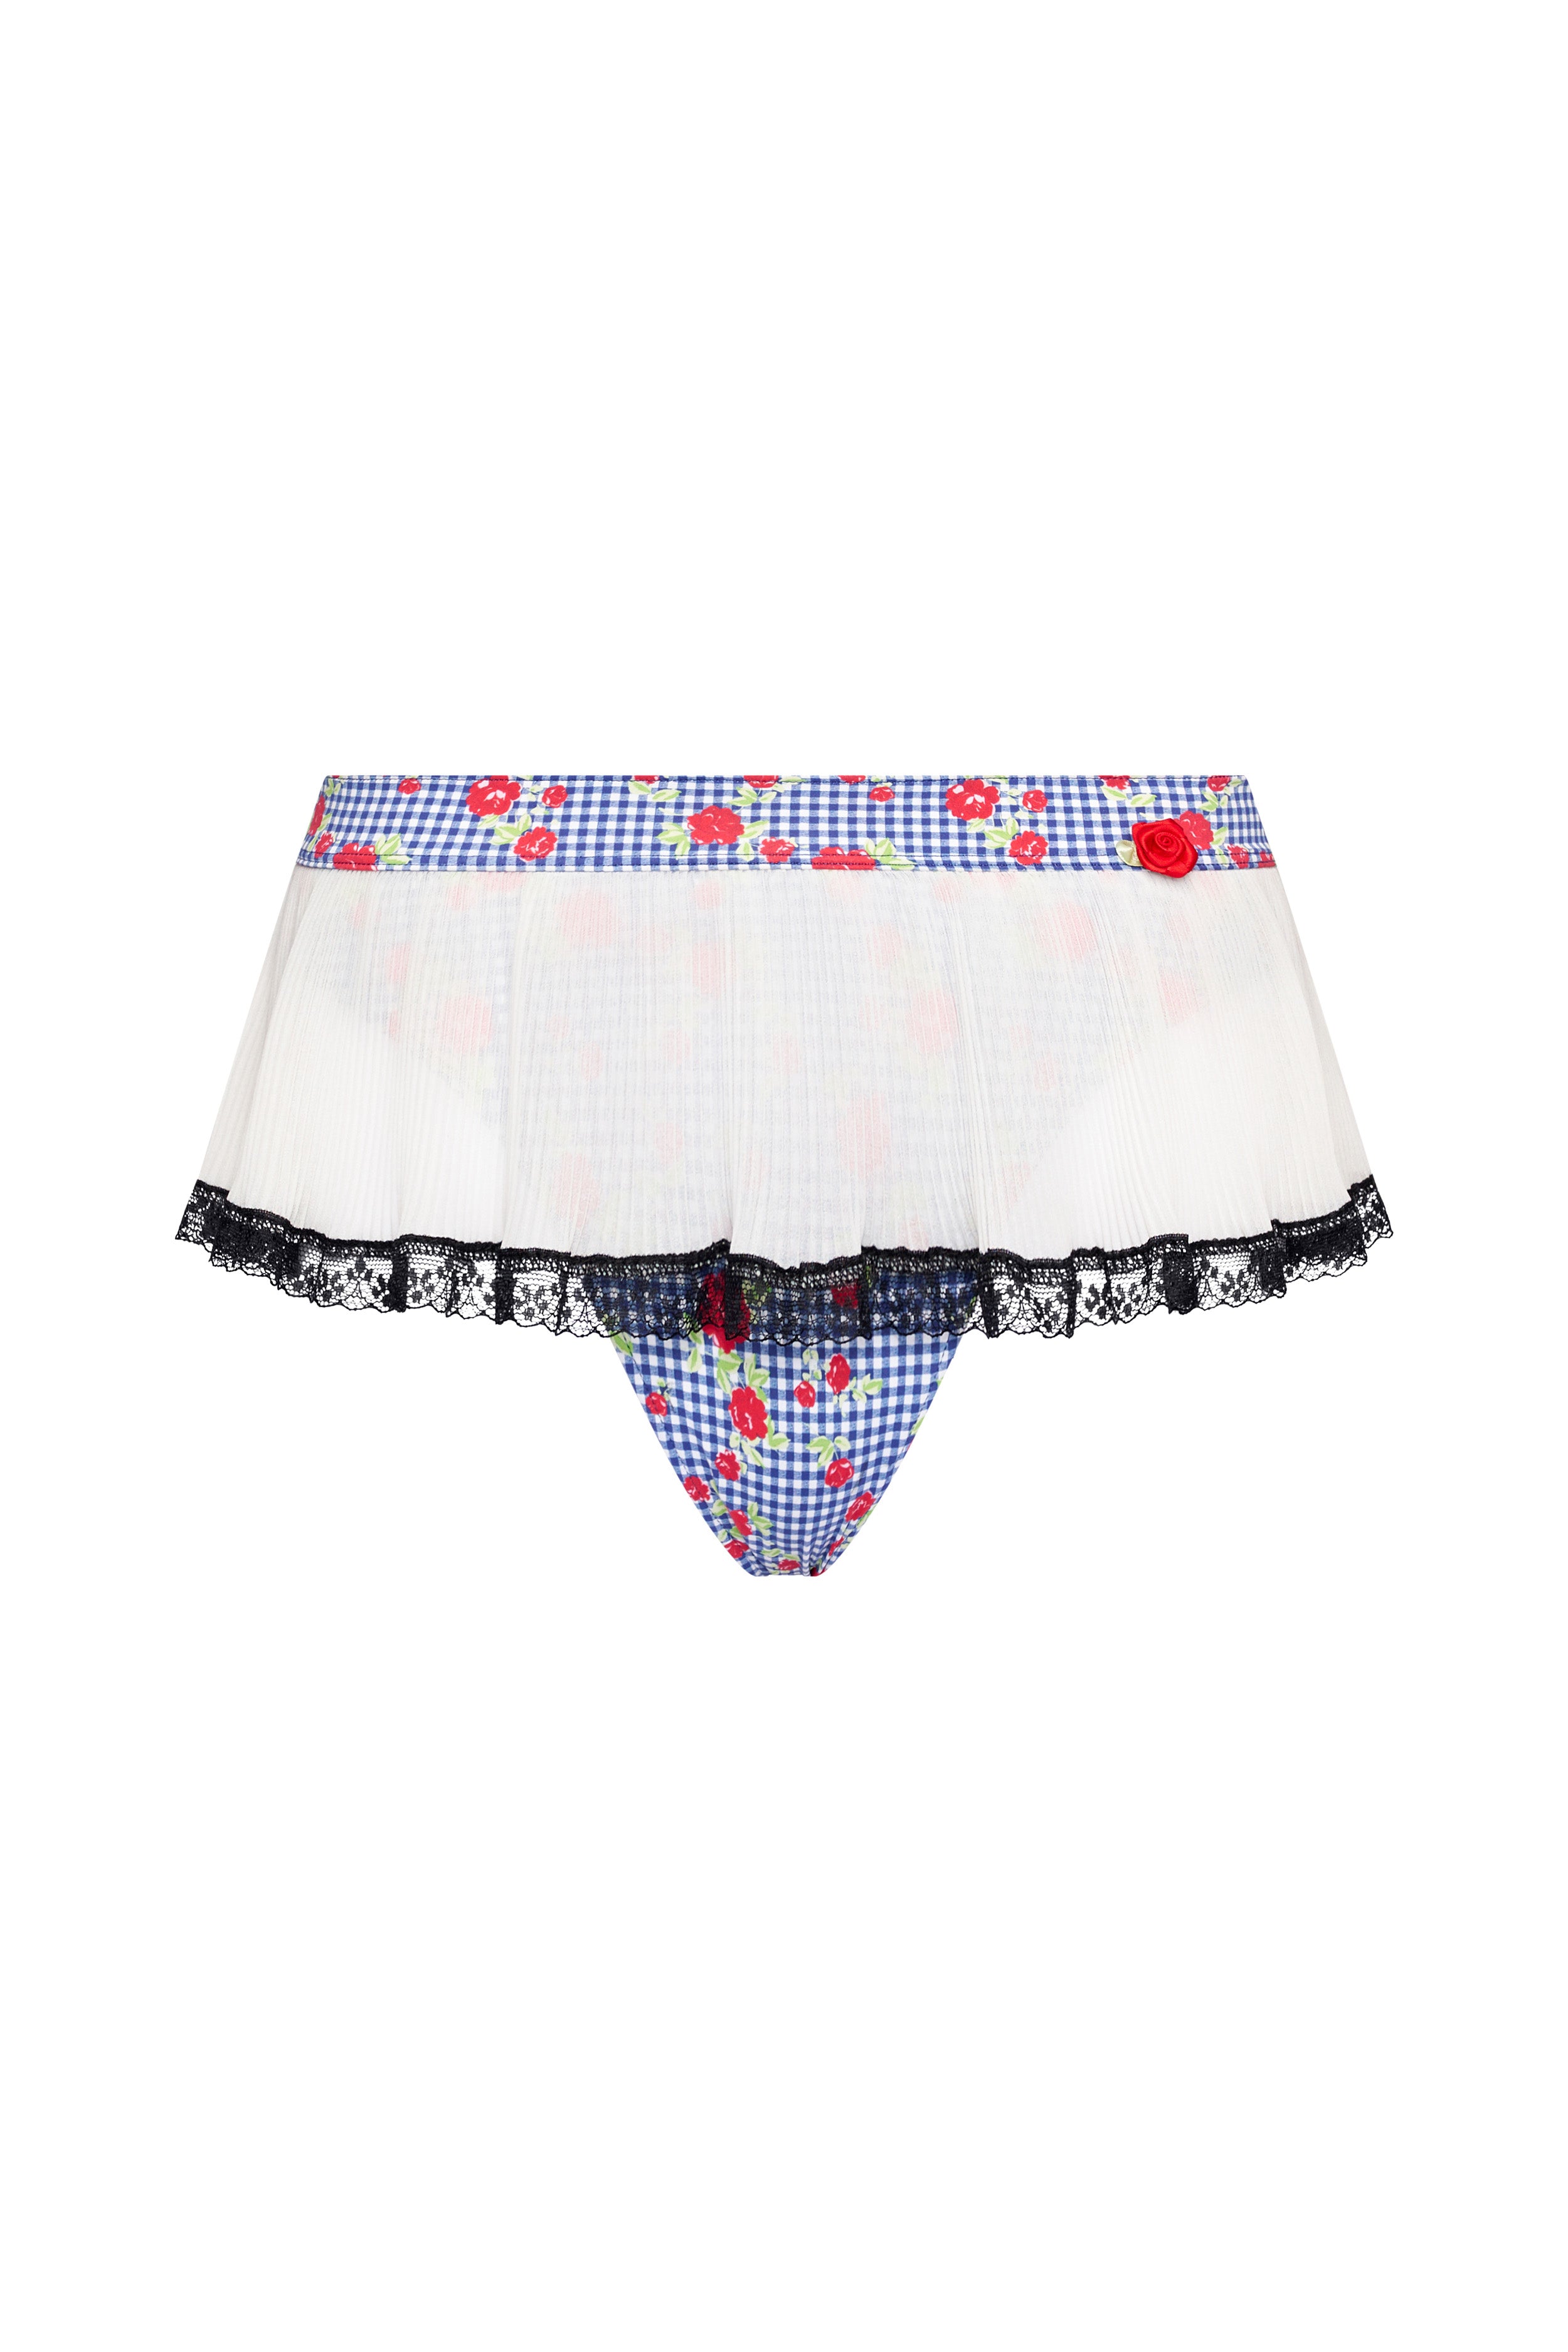 Polka Dot Cheeky Bikini Bottom with Ruffle Skirt Accent